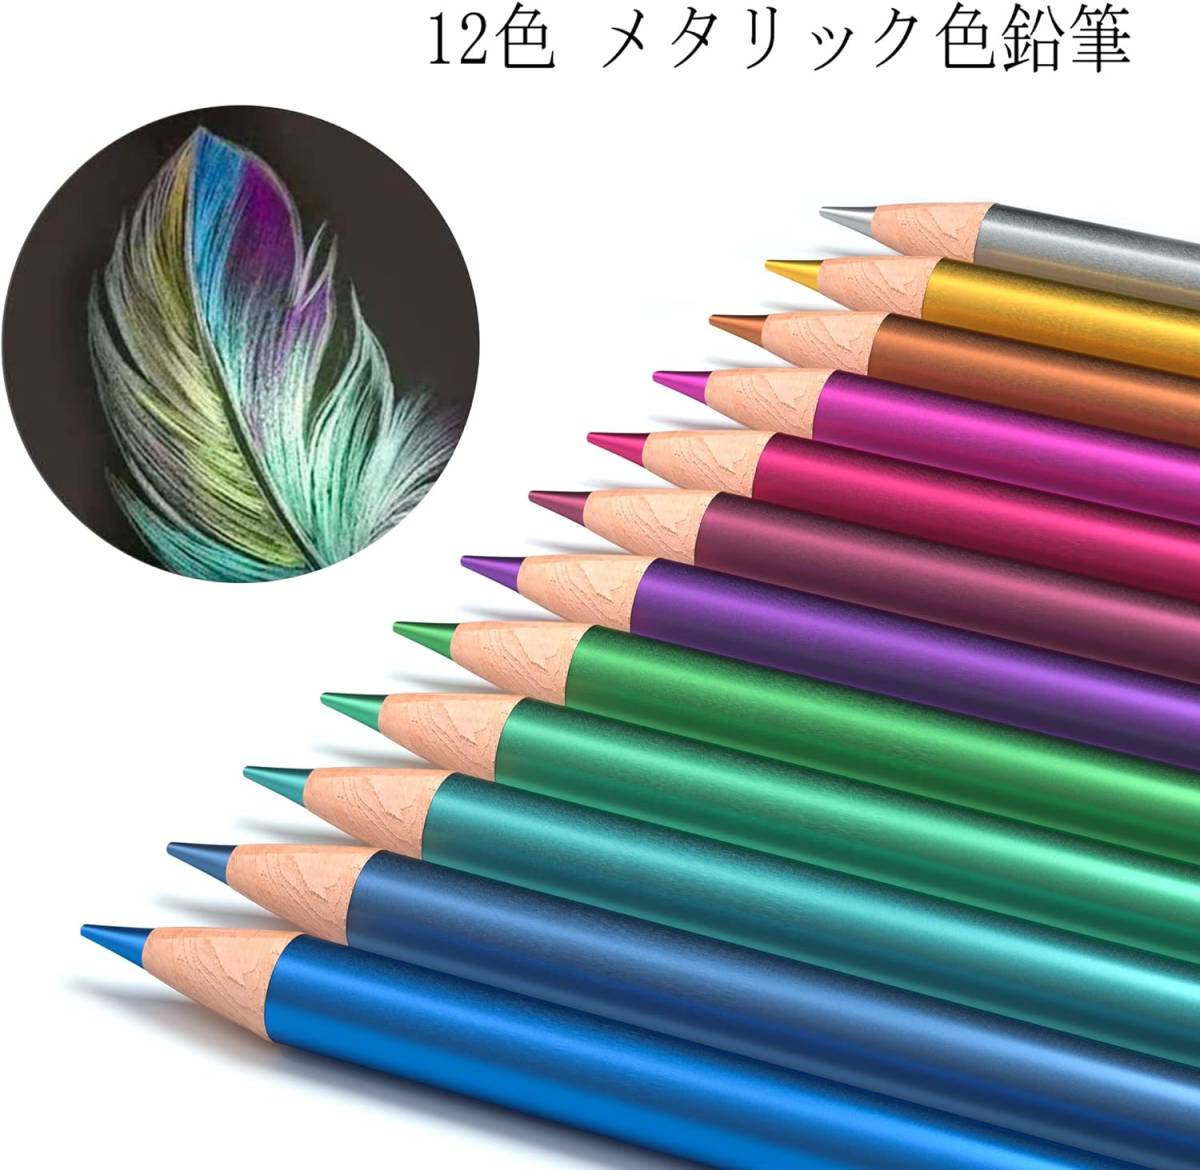 Shuttle Art 色鉛筆 172色 油性色鉛筆 カラーペンセット 大人の塗り絵 メタリック色 イラスト デザイン デッサン _画像3